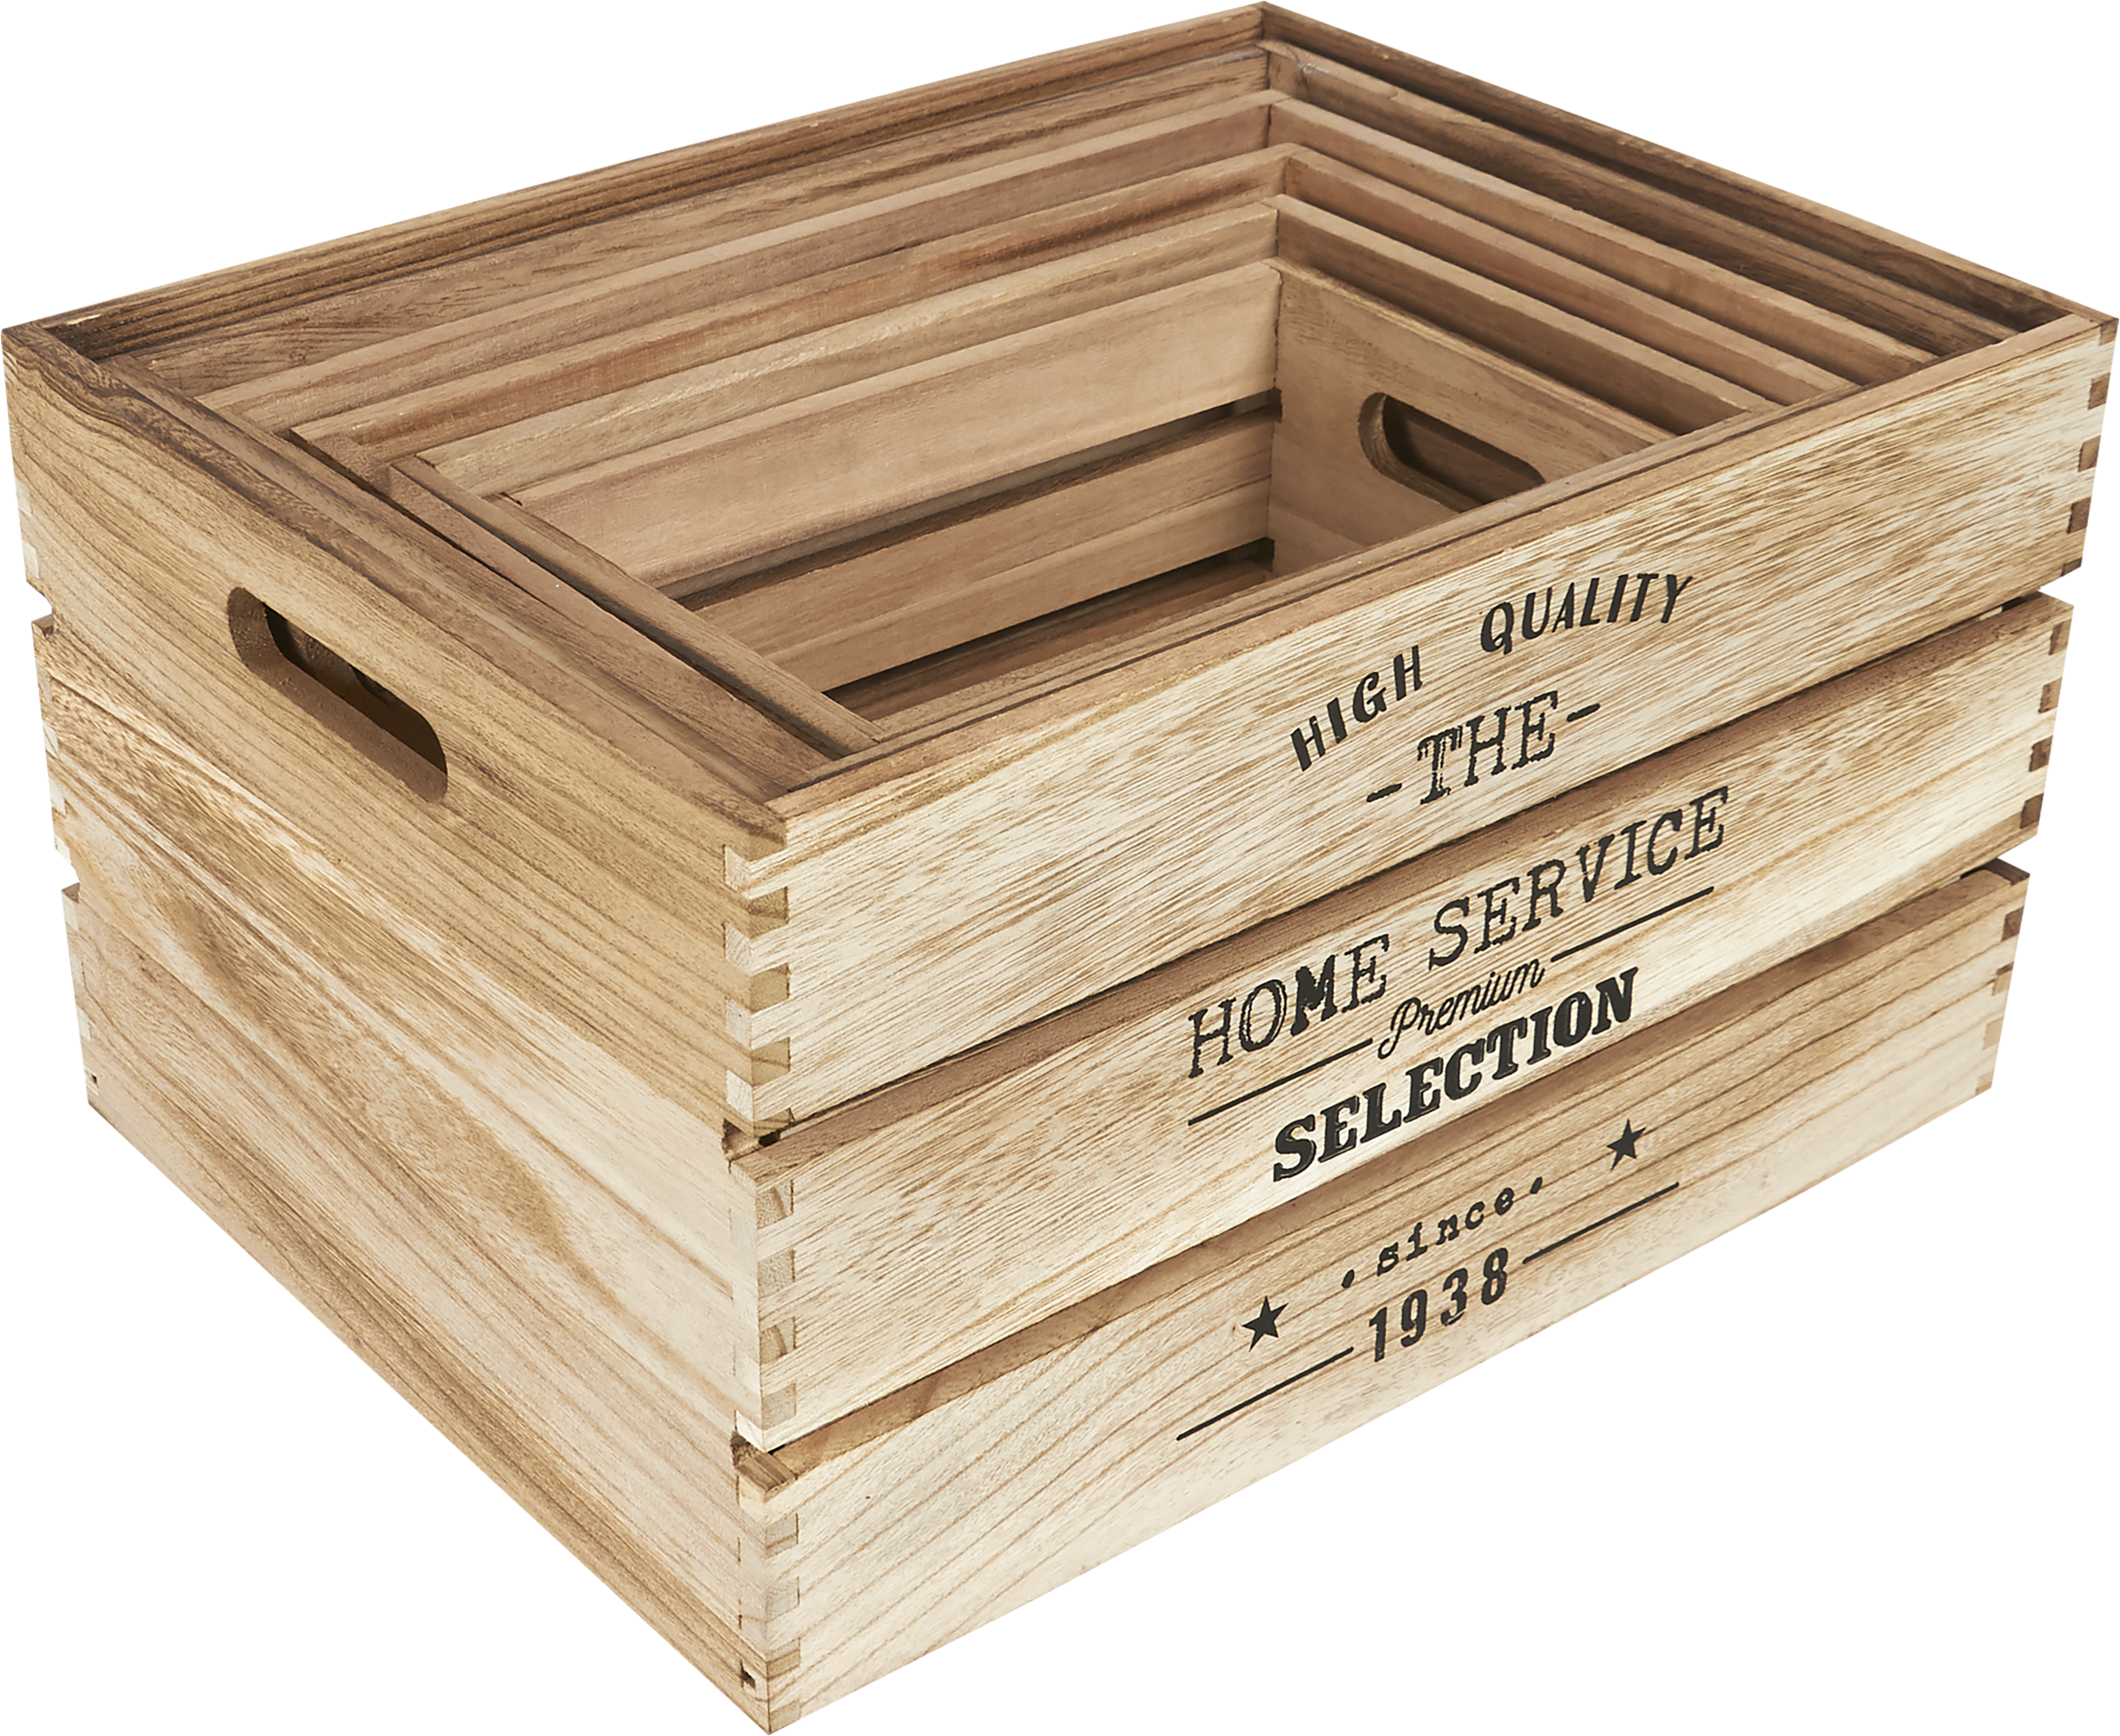 Купить ящики в перми. Набор ящиков Keter click bin Medium (17193661) 23x16x13.5 см. Леруа ящик деревянный. Деревянный ящик для хранения. Декоративные ящики для хранения.